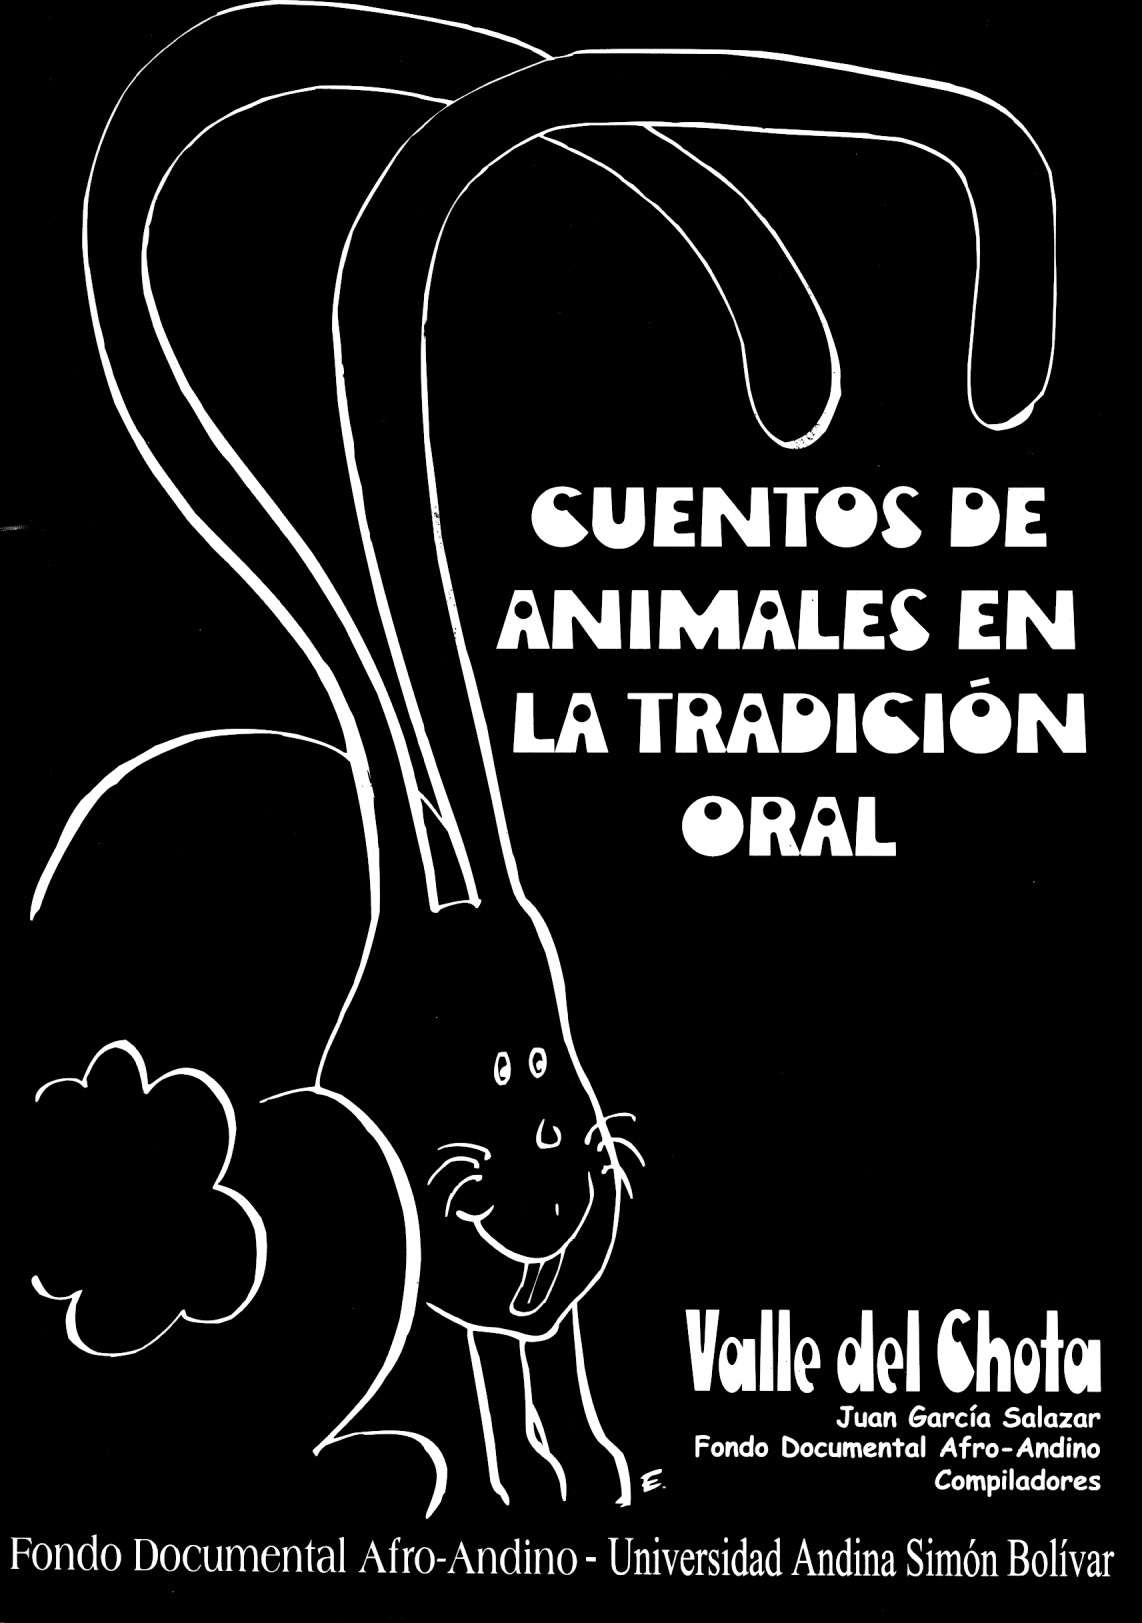 . Cover of the book Cuentos de animales en la tradición oral (Tales of animals in oral tradition). 